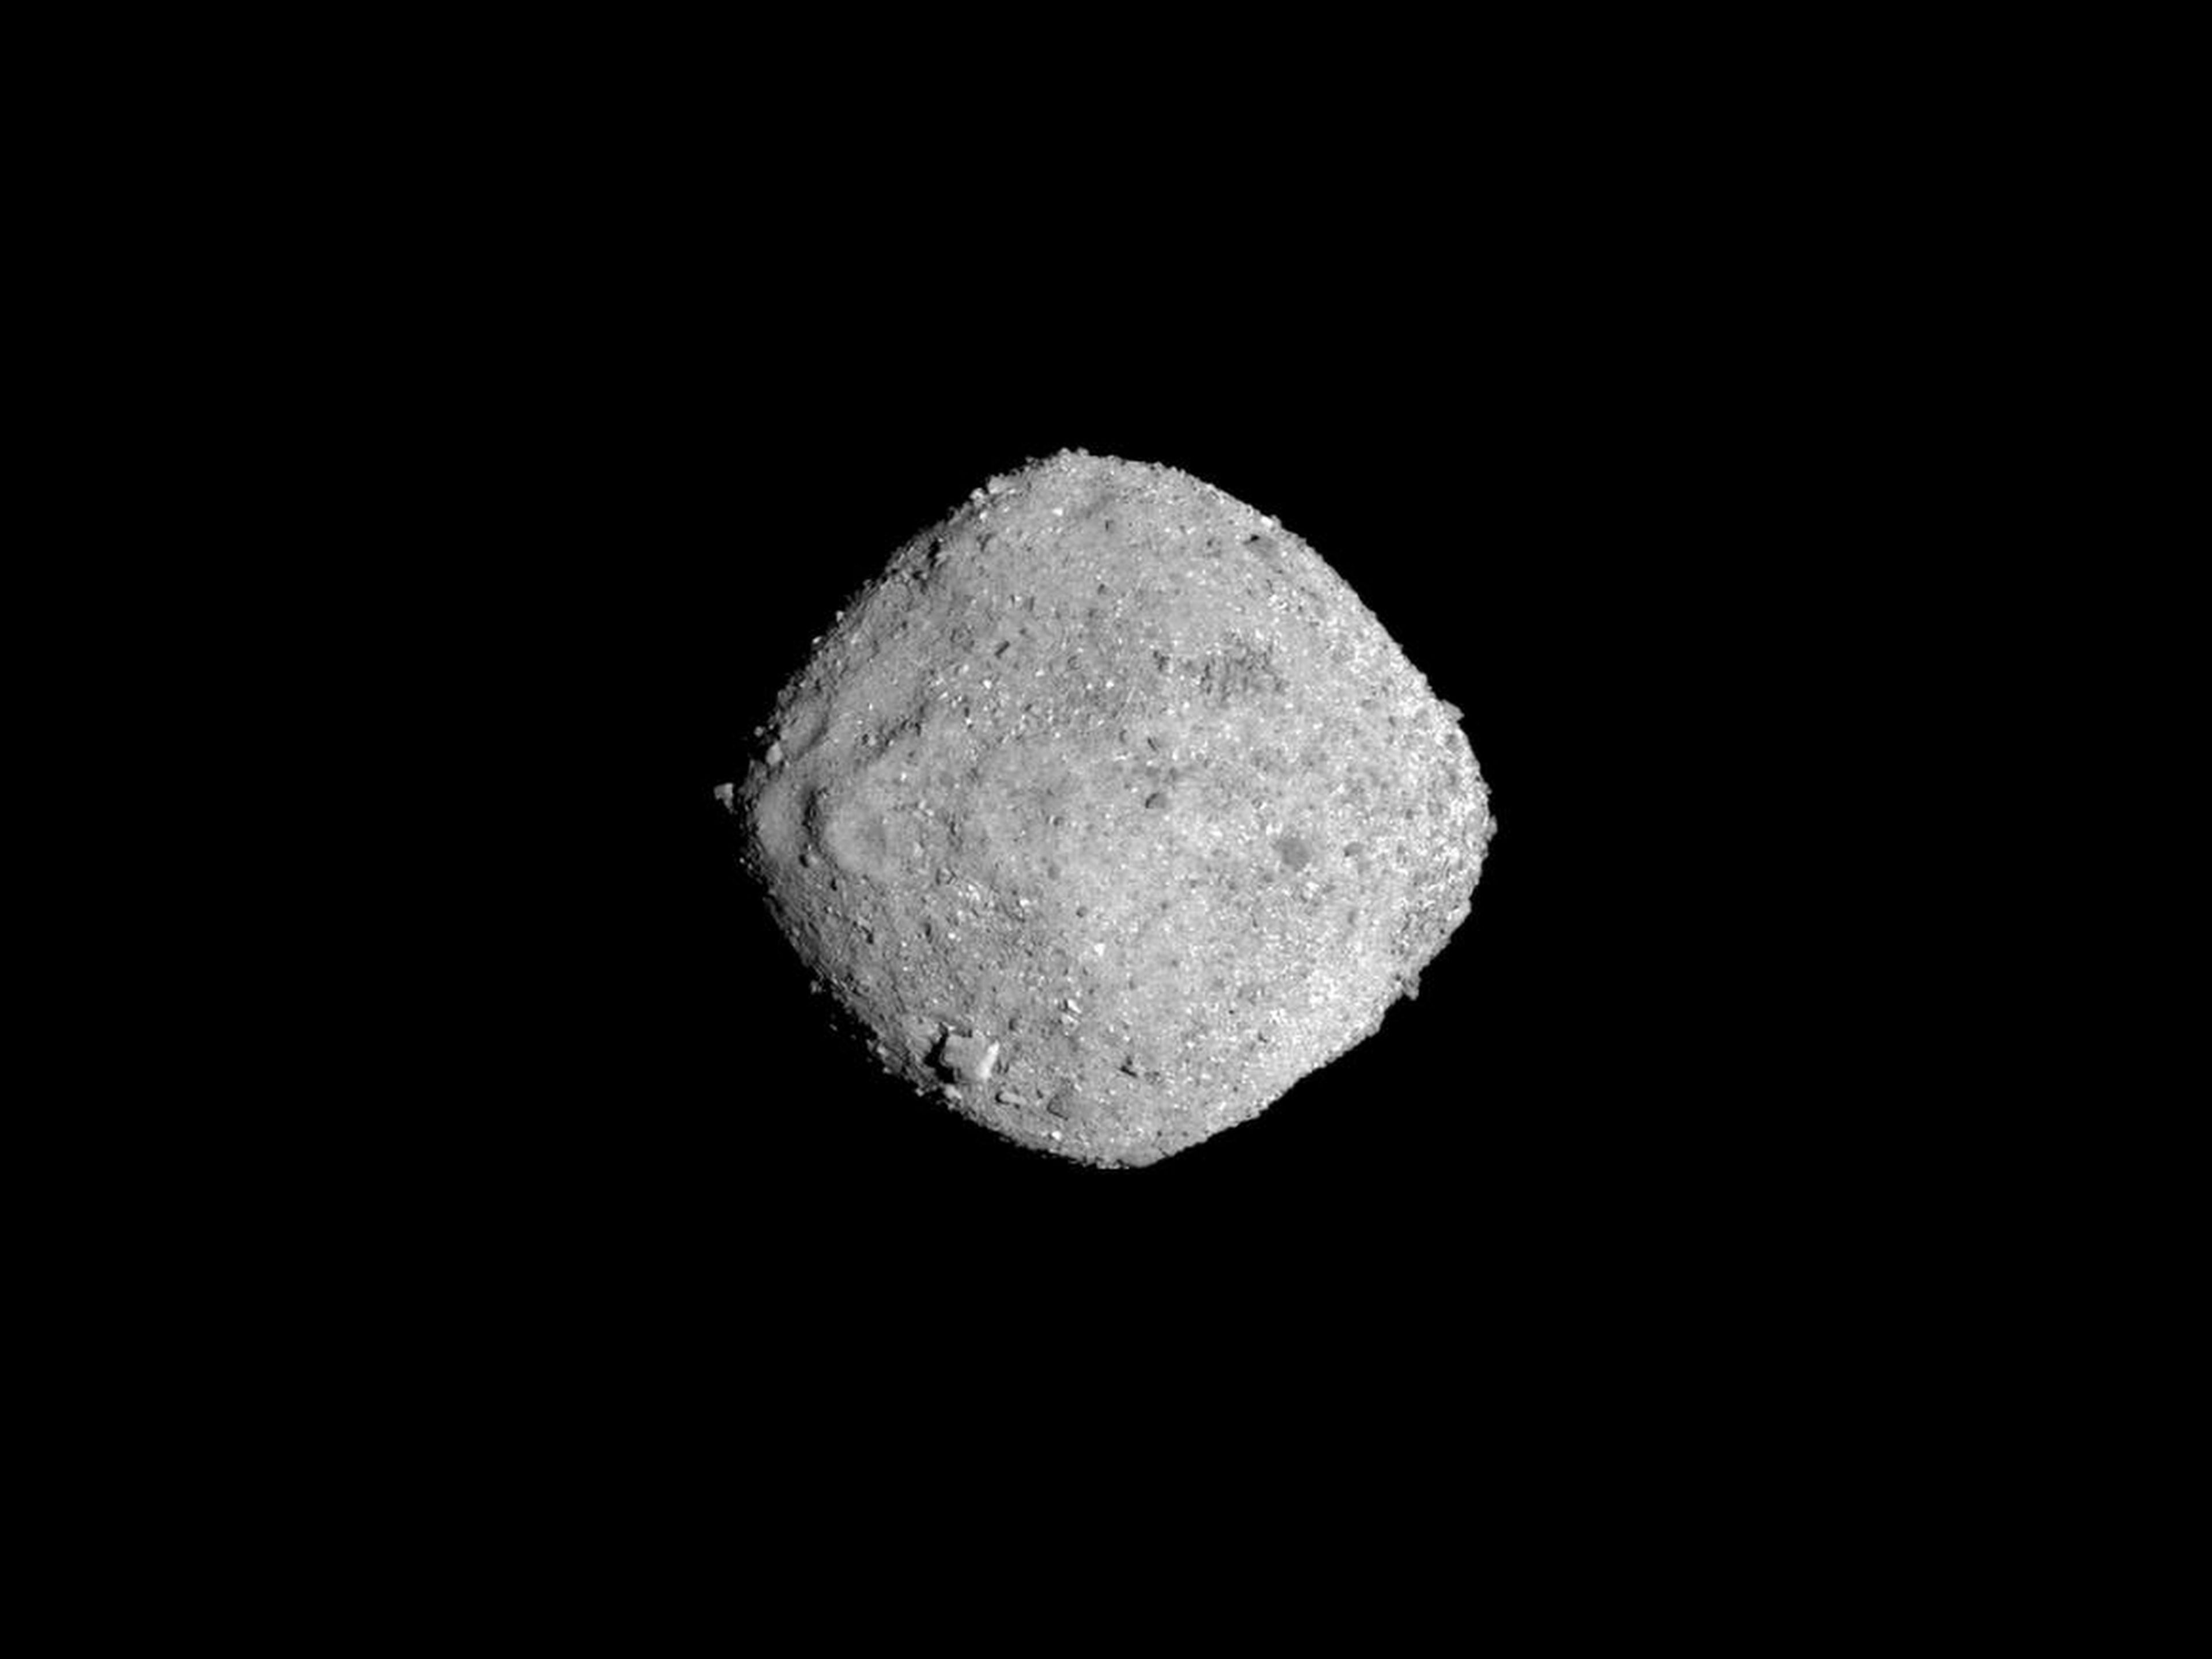 La nave espacial OSIRIS-REx de NASA tomó esta imagen del asteroide Bennu en Noviembre 16, 2018, desde una distancia de 85 millas (136 kilómetros).